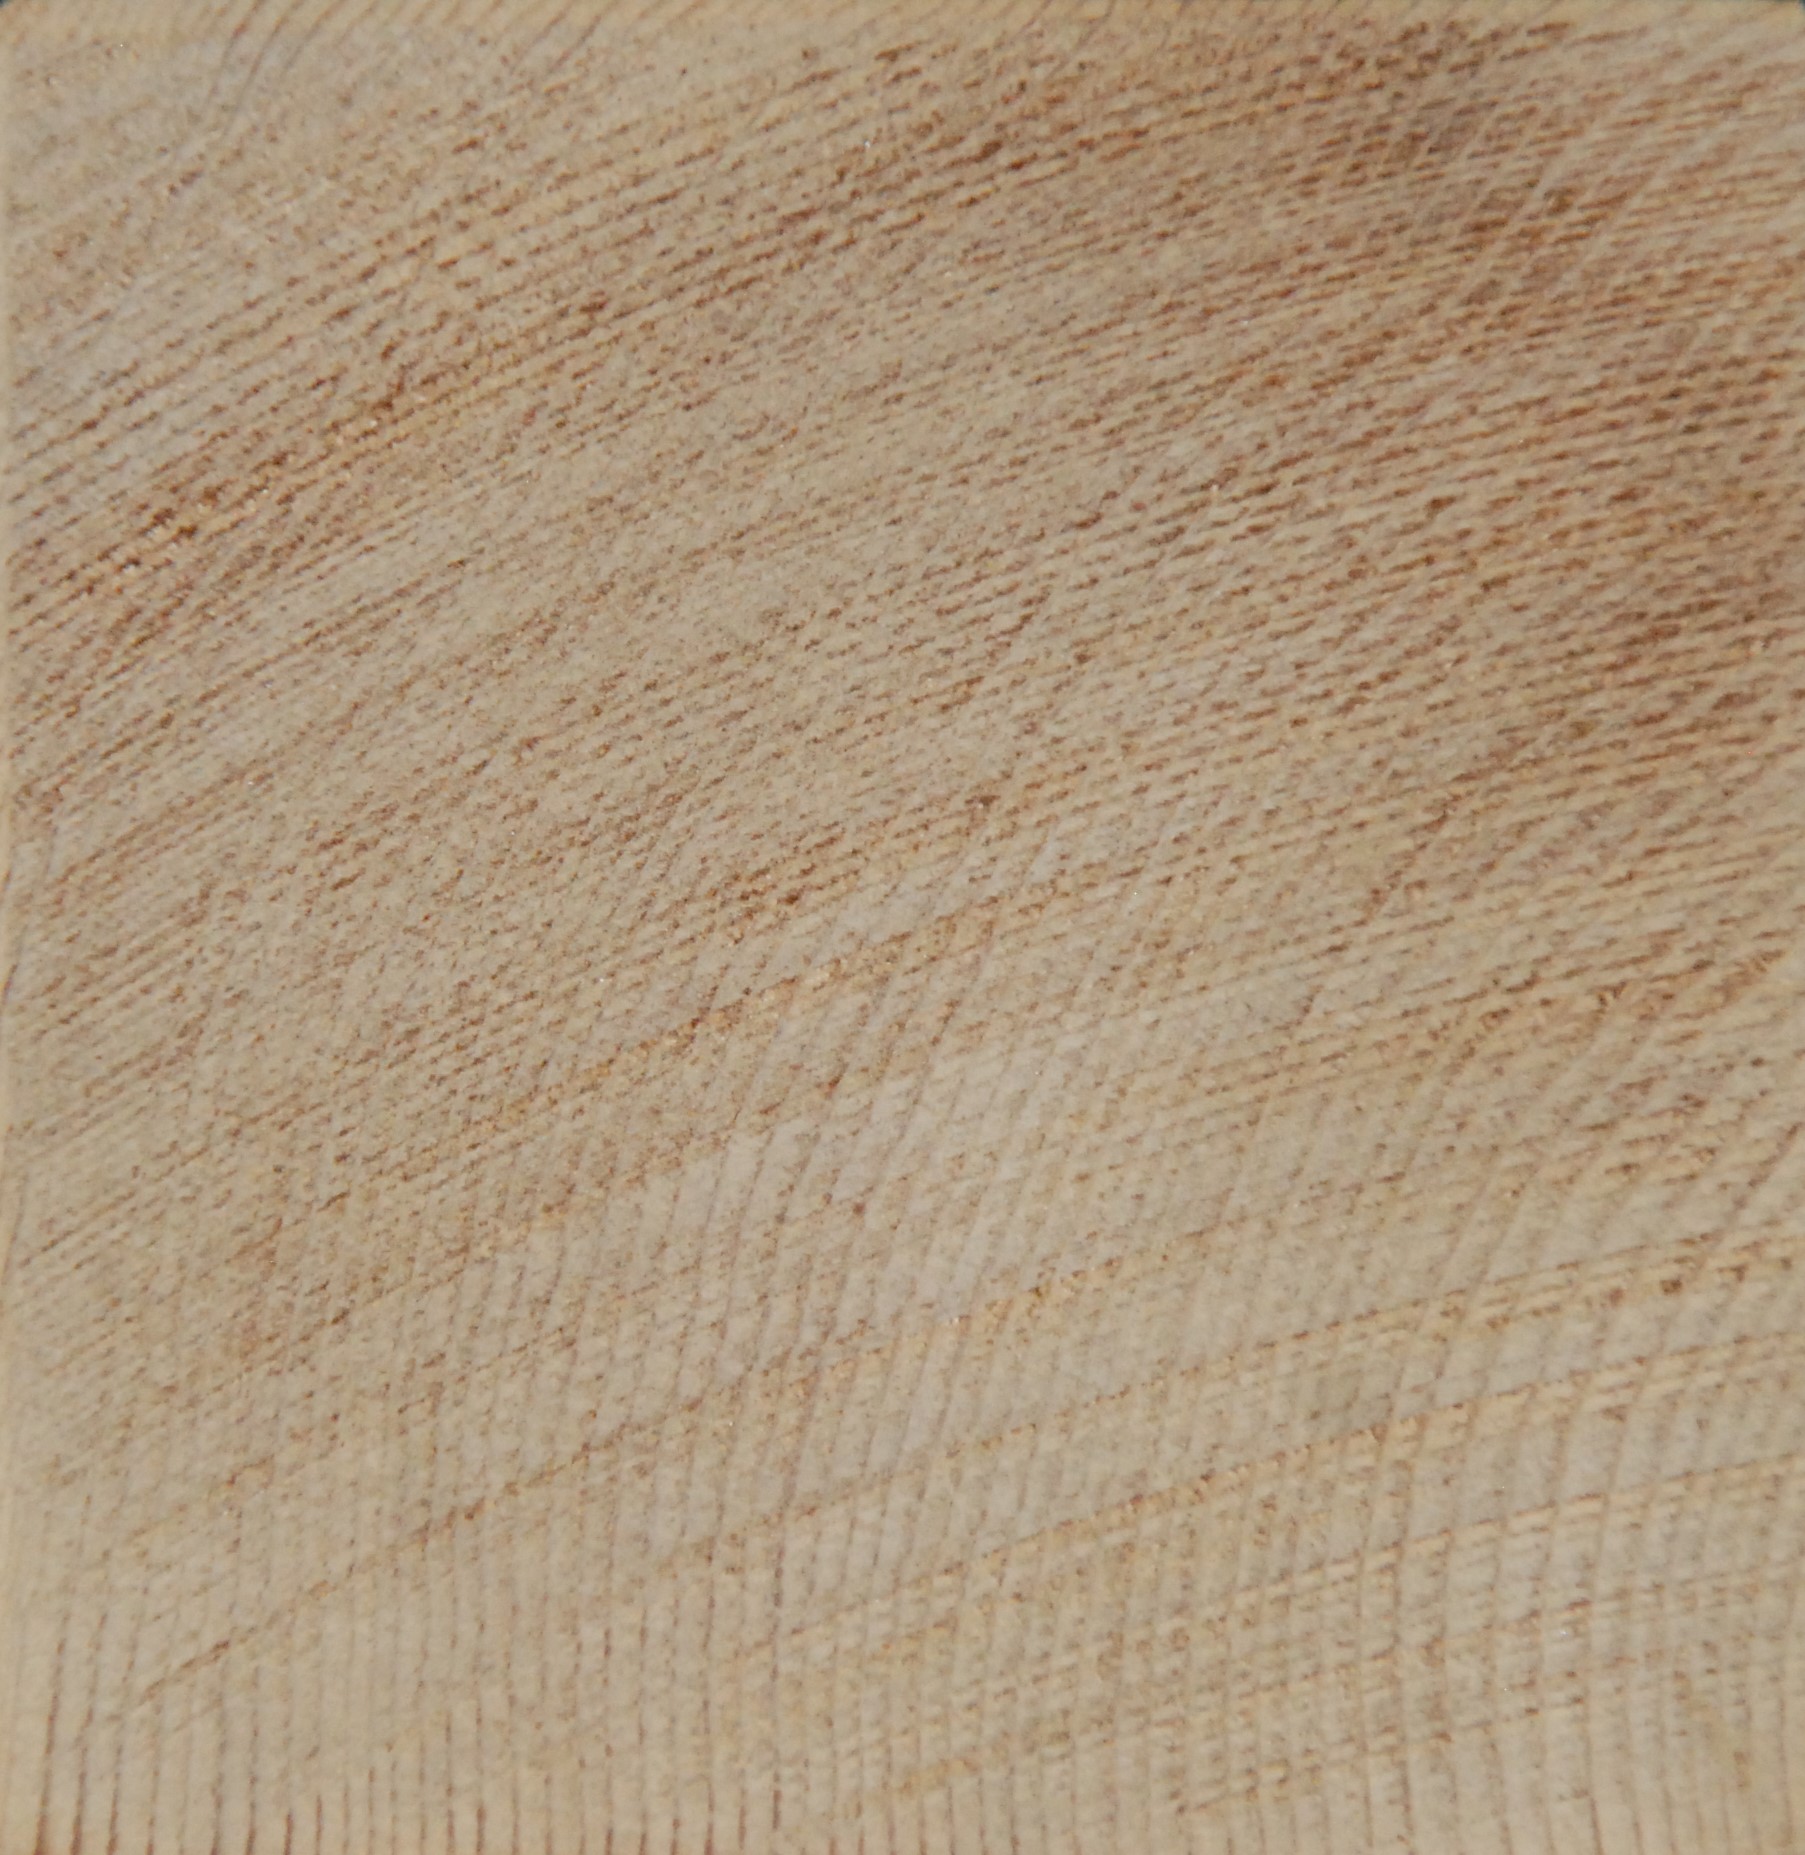 Venatura legno cedro rosso canadese